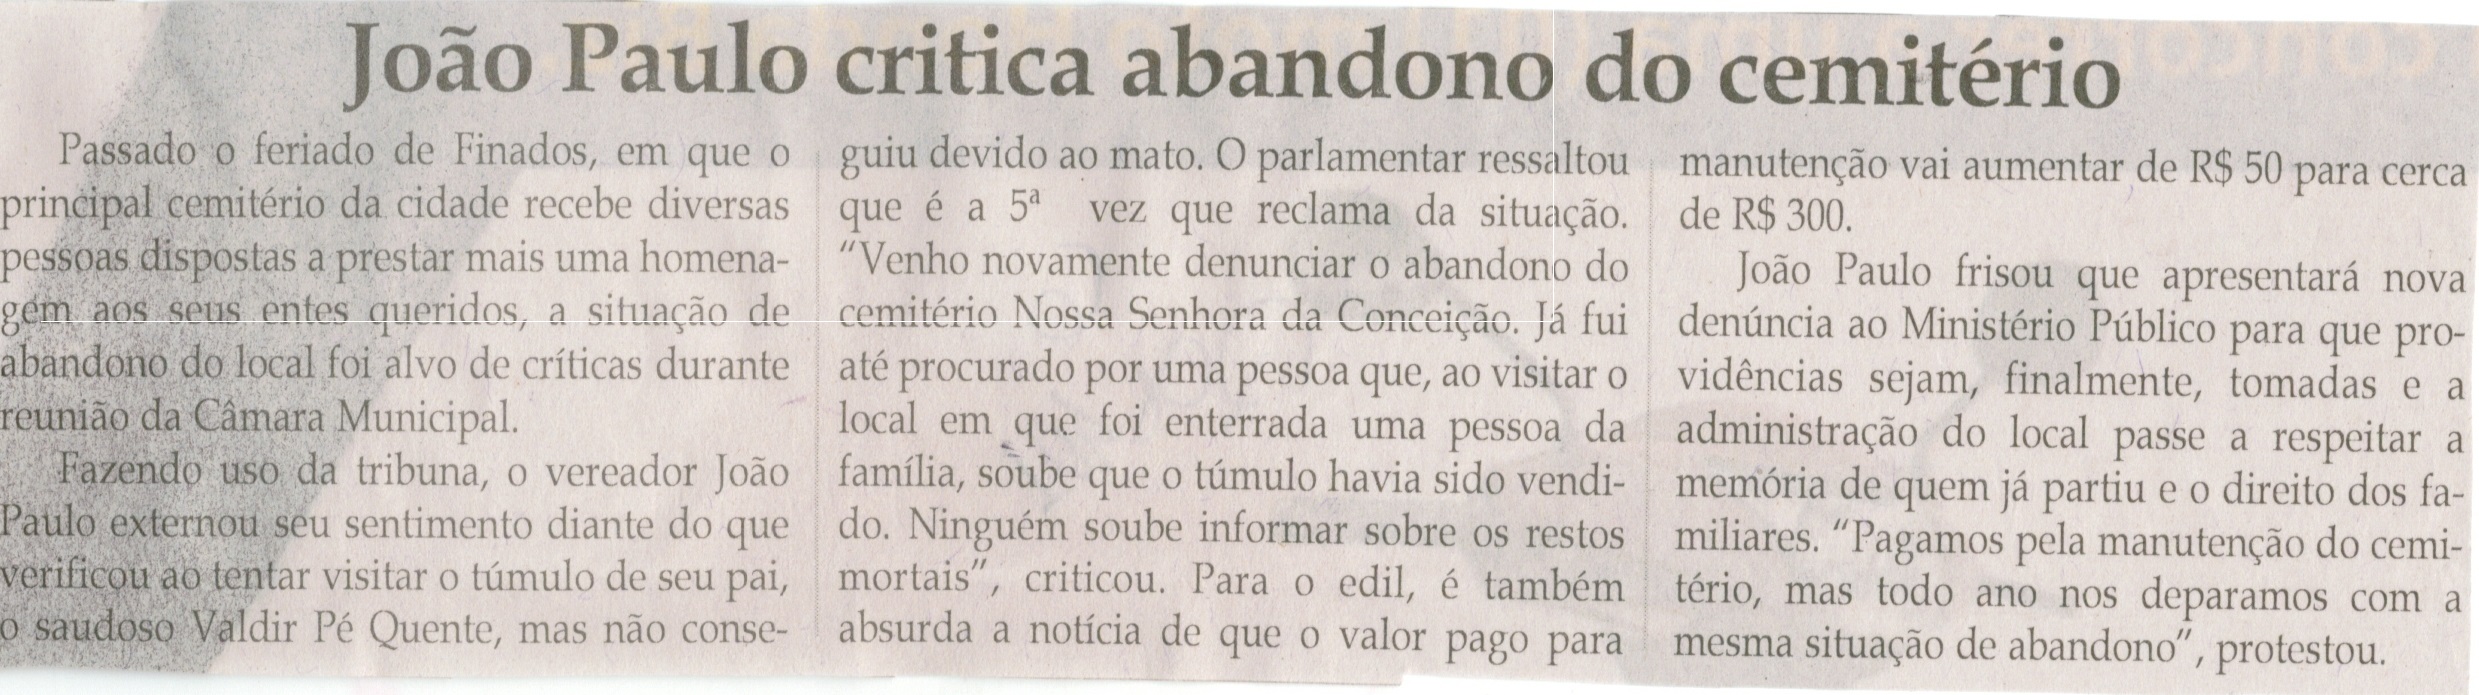 João Paulo critica abandono do cemitério. Jornal Correio da Cidade, Conselheiro Lafaiete, 14 nov. 2014, p. 6.